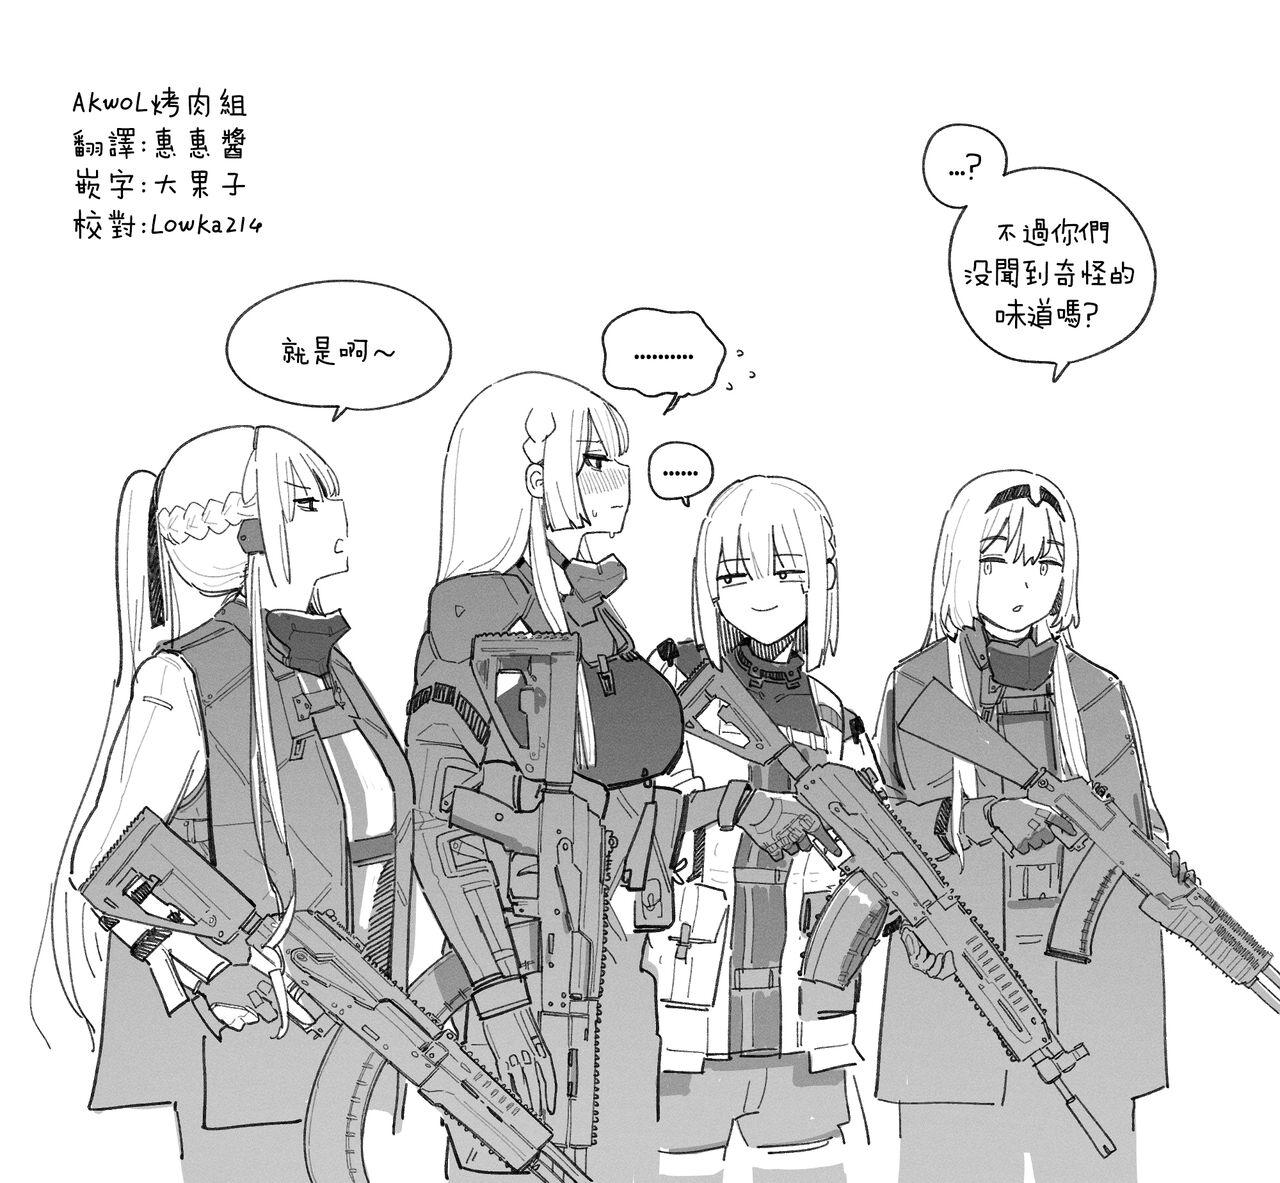 AK-15's abs 5